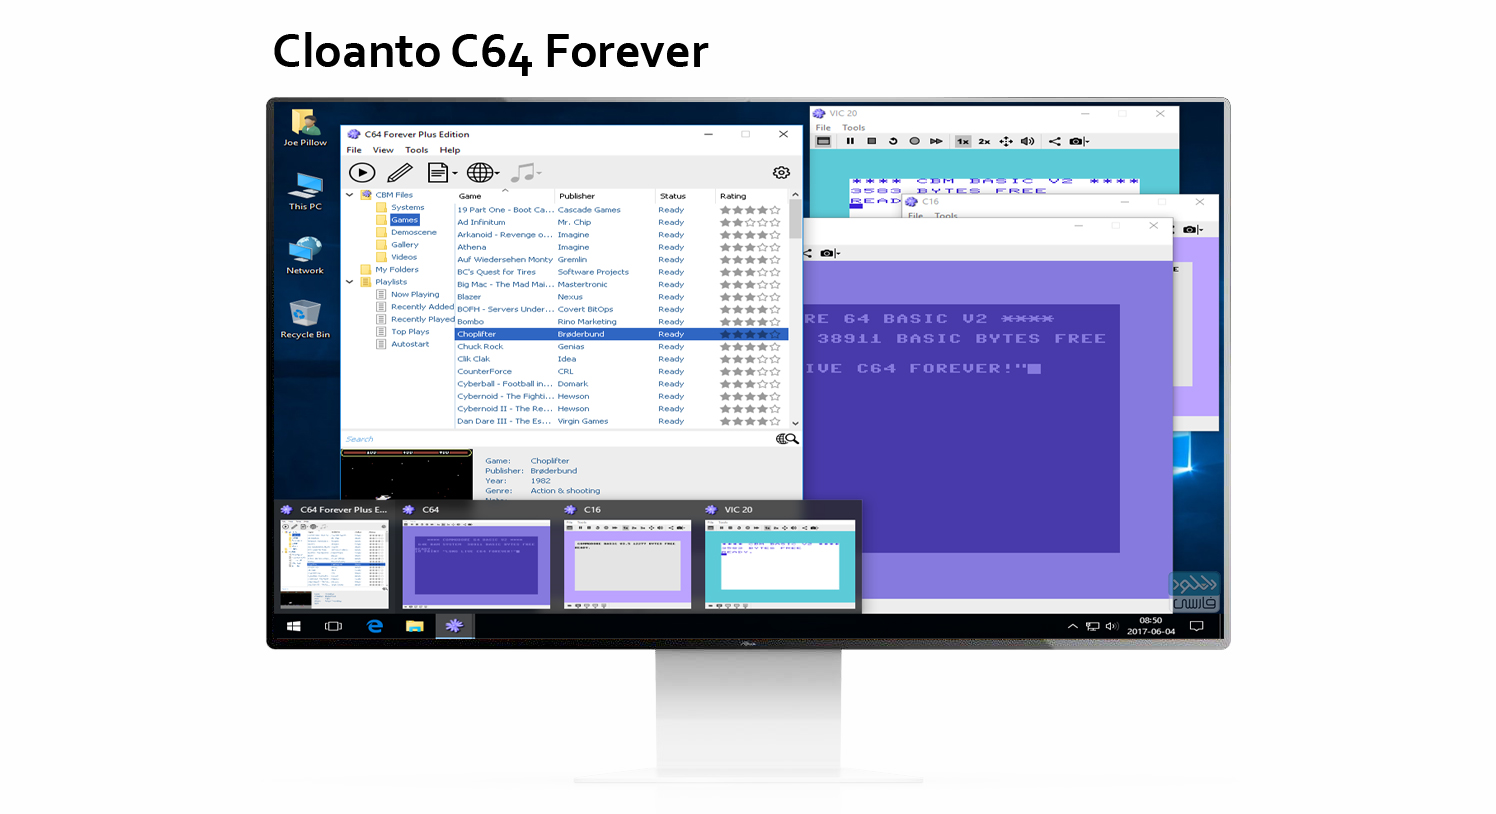 دانلود نرم افزار Cloanto C64 Forever v10.0.13 Plus Edition شبیه ساز سخت افزار C64